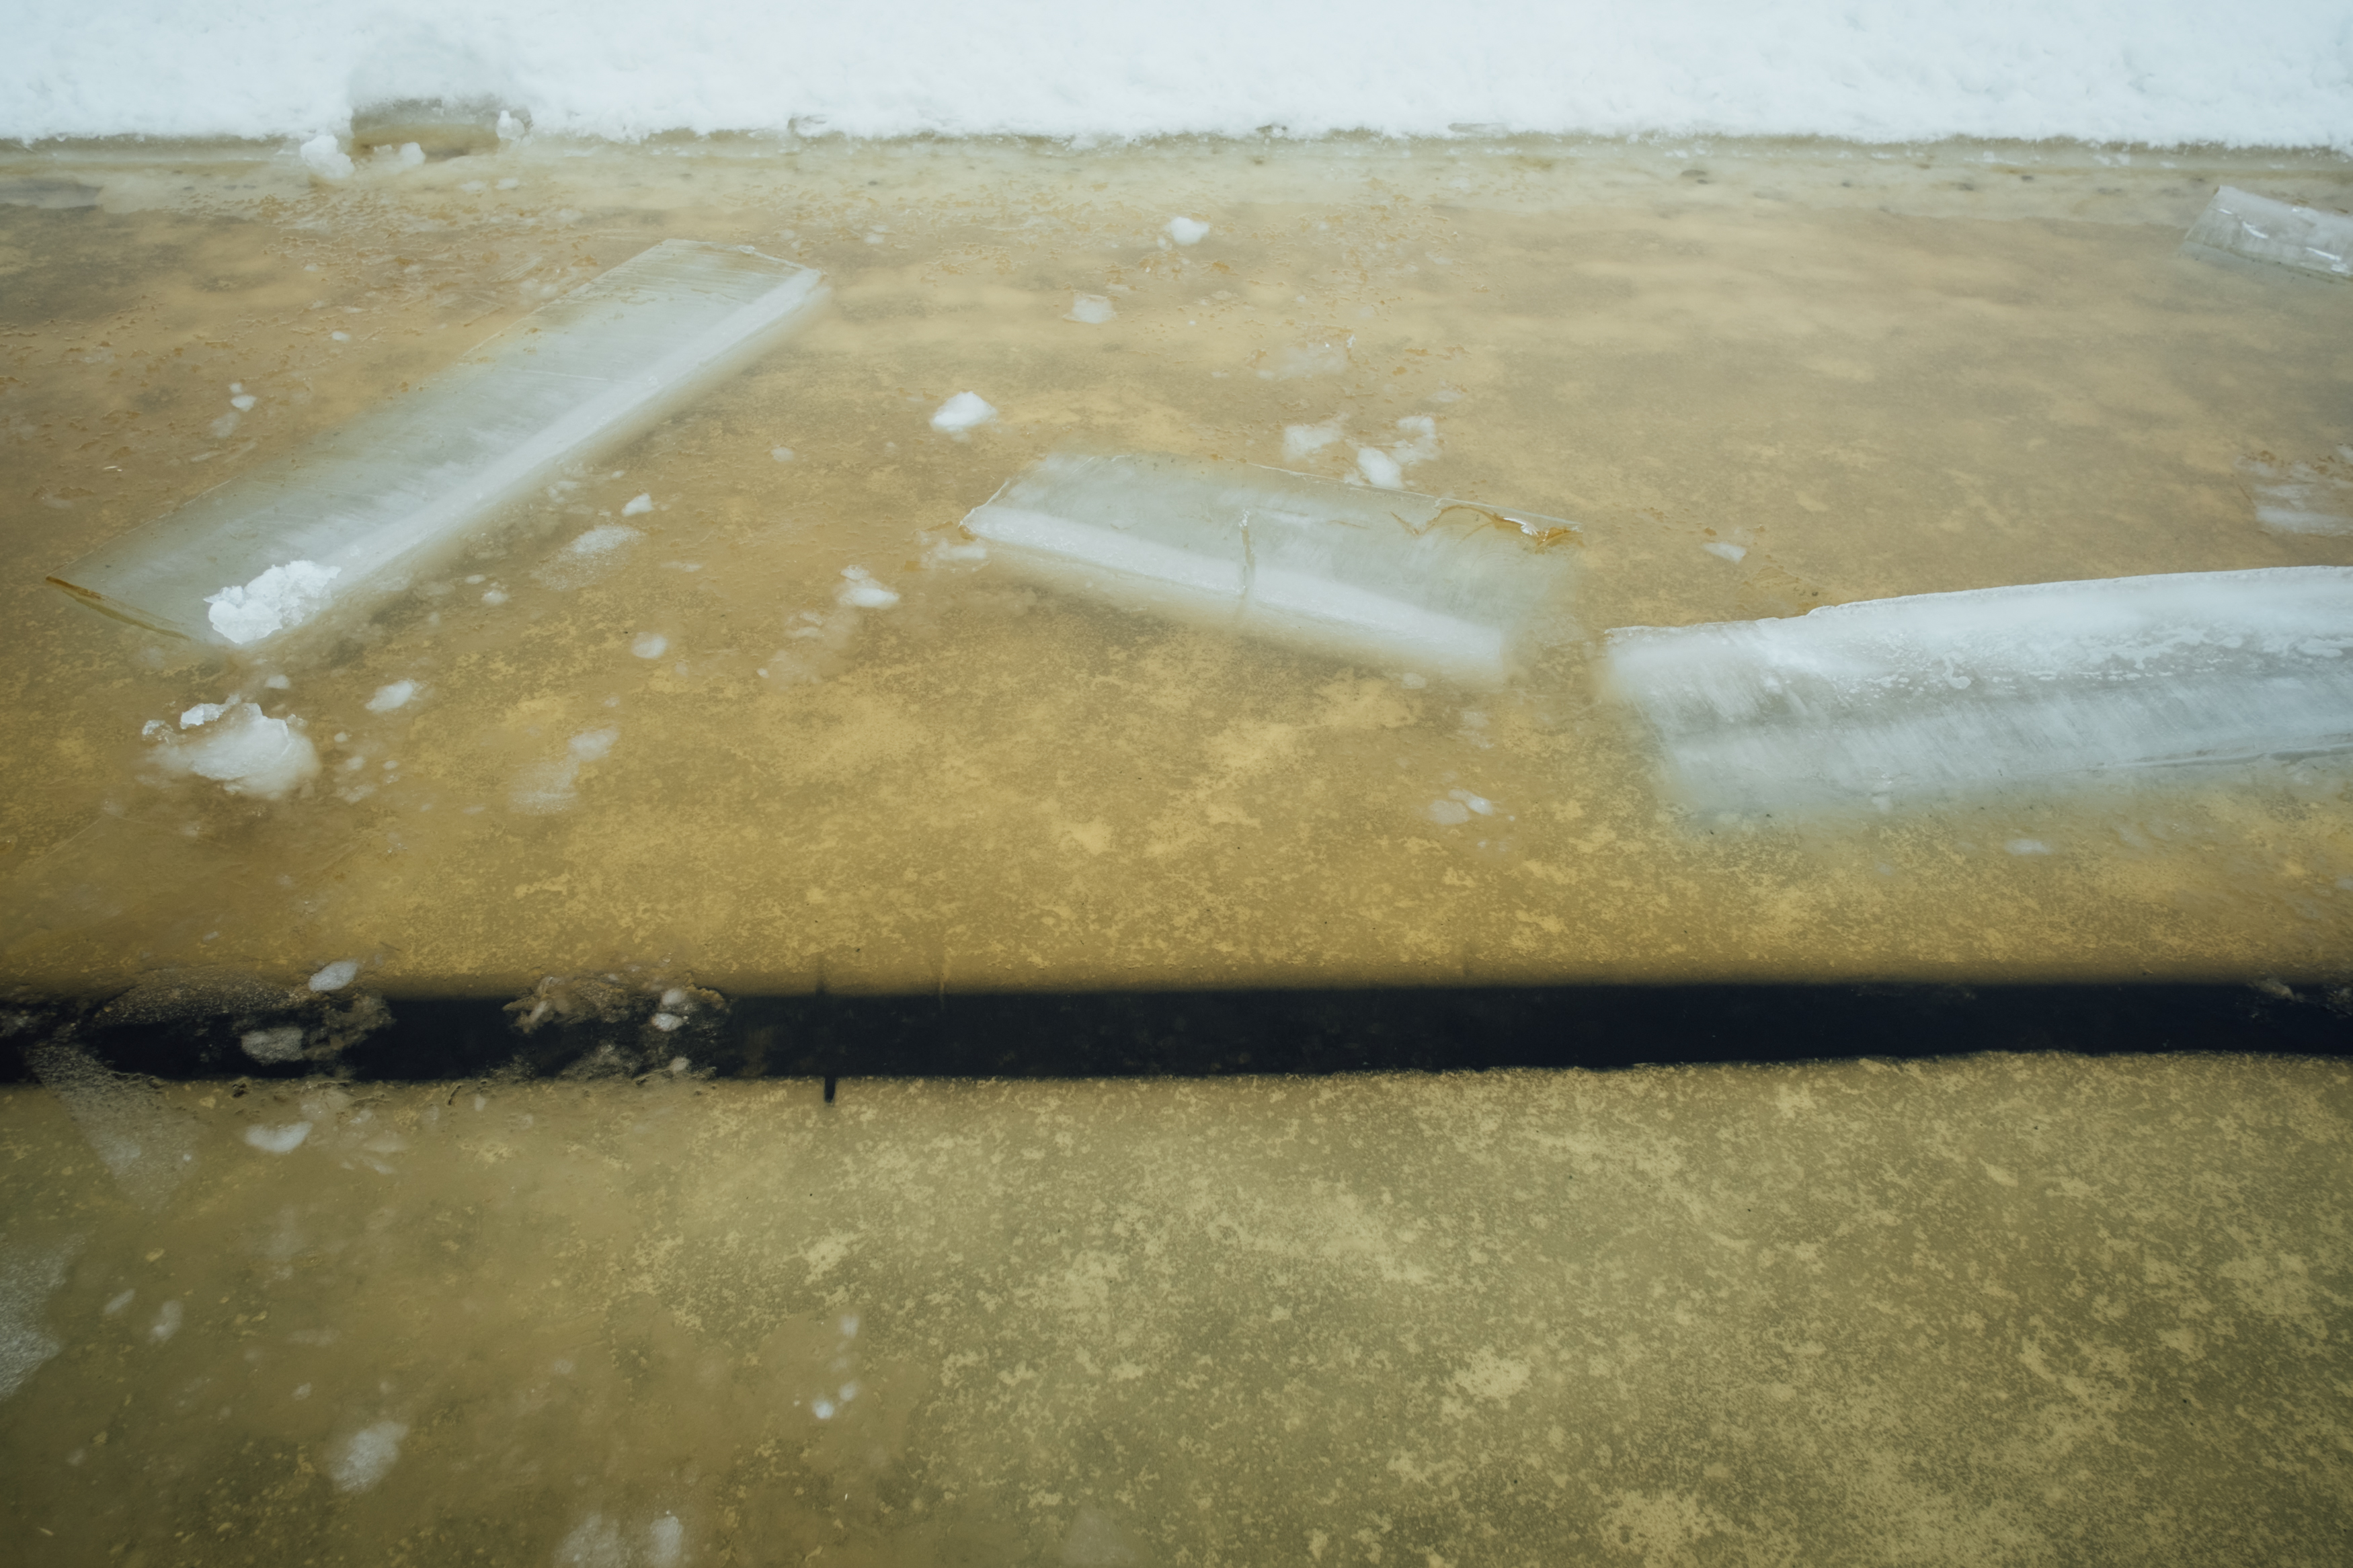 Un corte limpio en el hielo marca el borde del carrusel. (Alessandro RAMPAZZO / AFP)